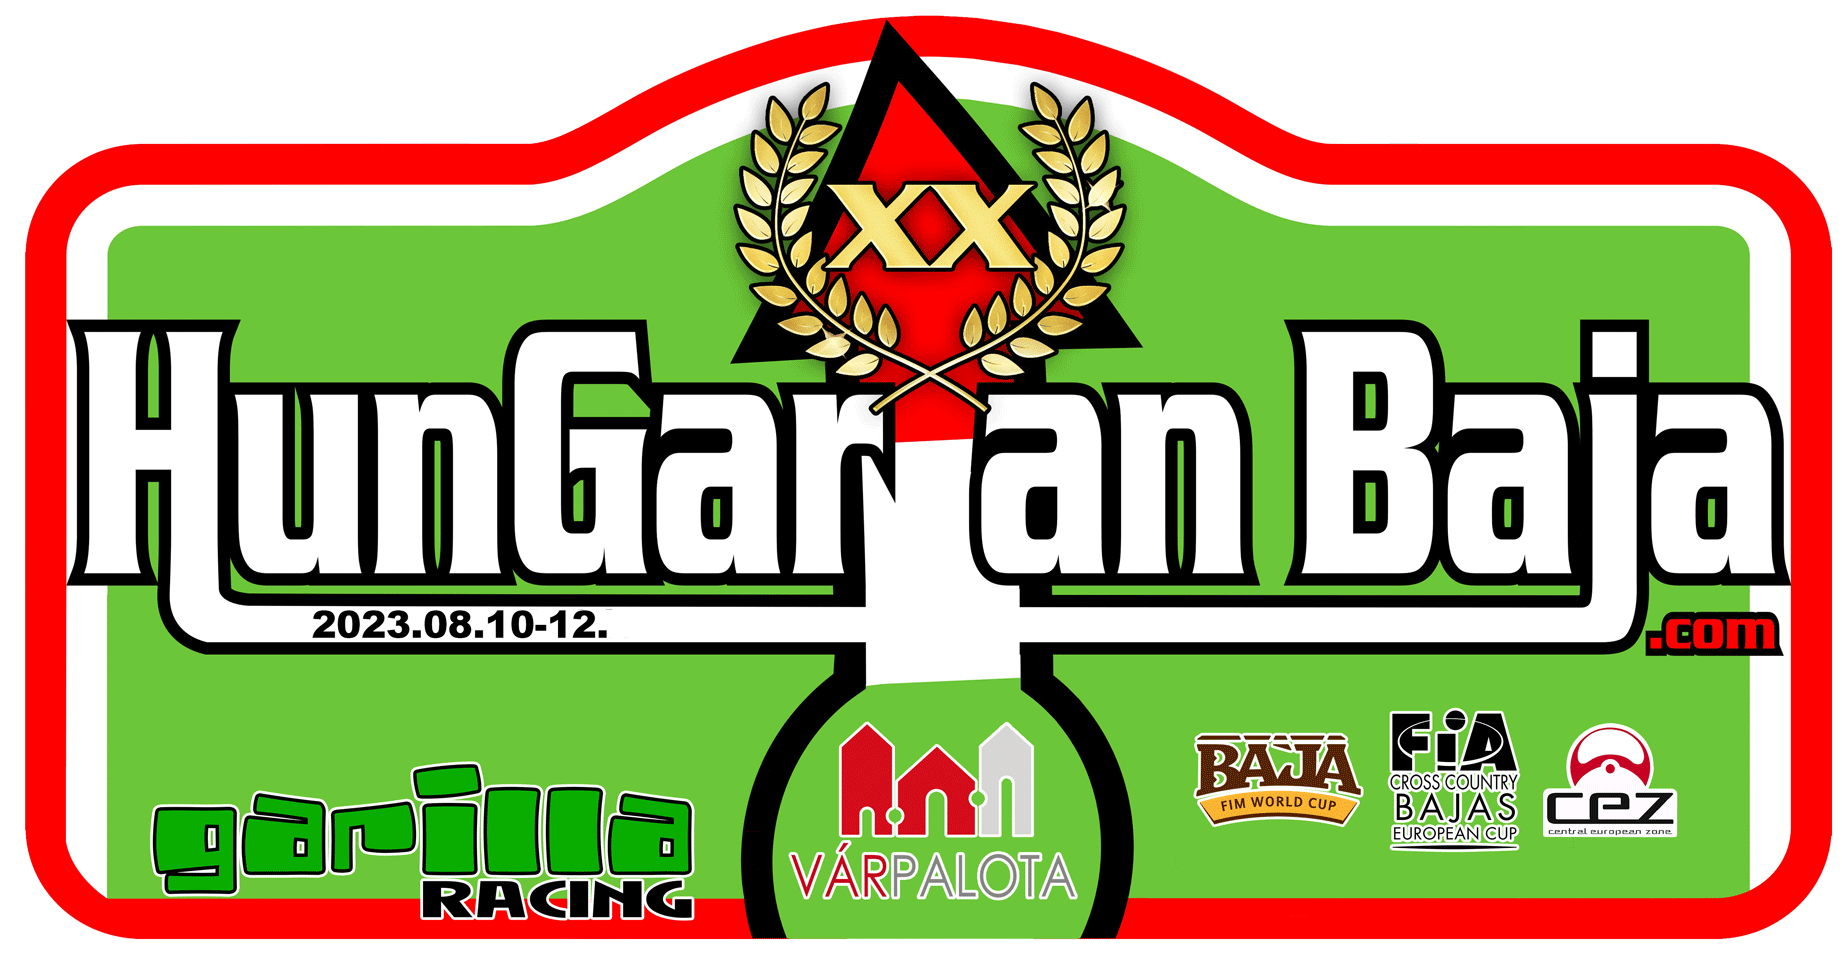 Hungarian Baja 2023: Holowczyc, Svitko and Varga triumphed at HunGarian Baja!